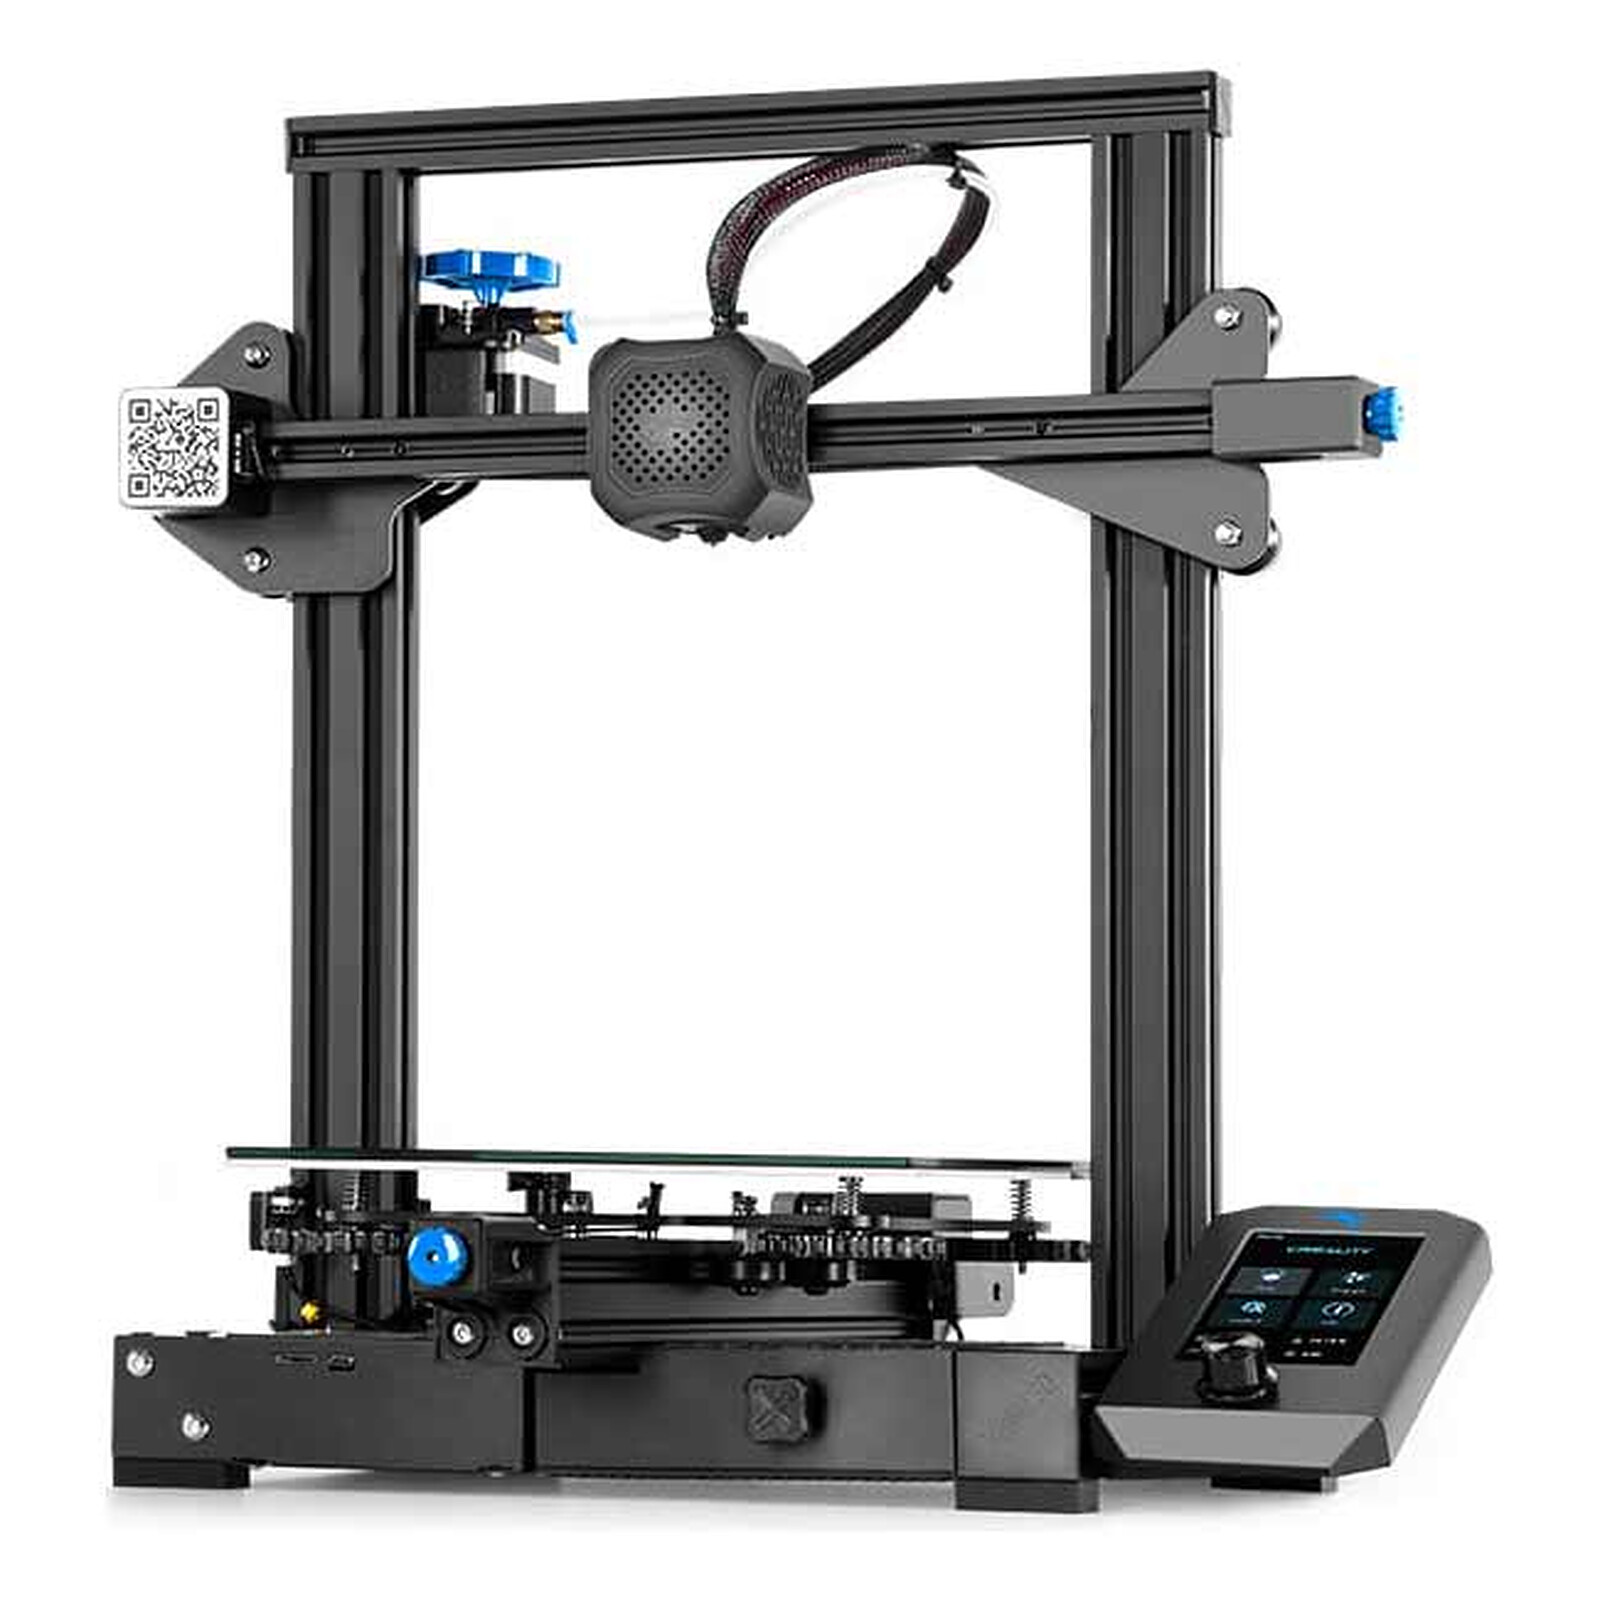 Creality Ender 3 pro - Imprimante 3D - Garantie 3 ans LDLC